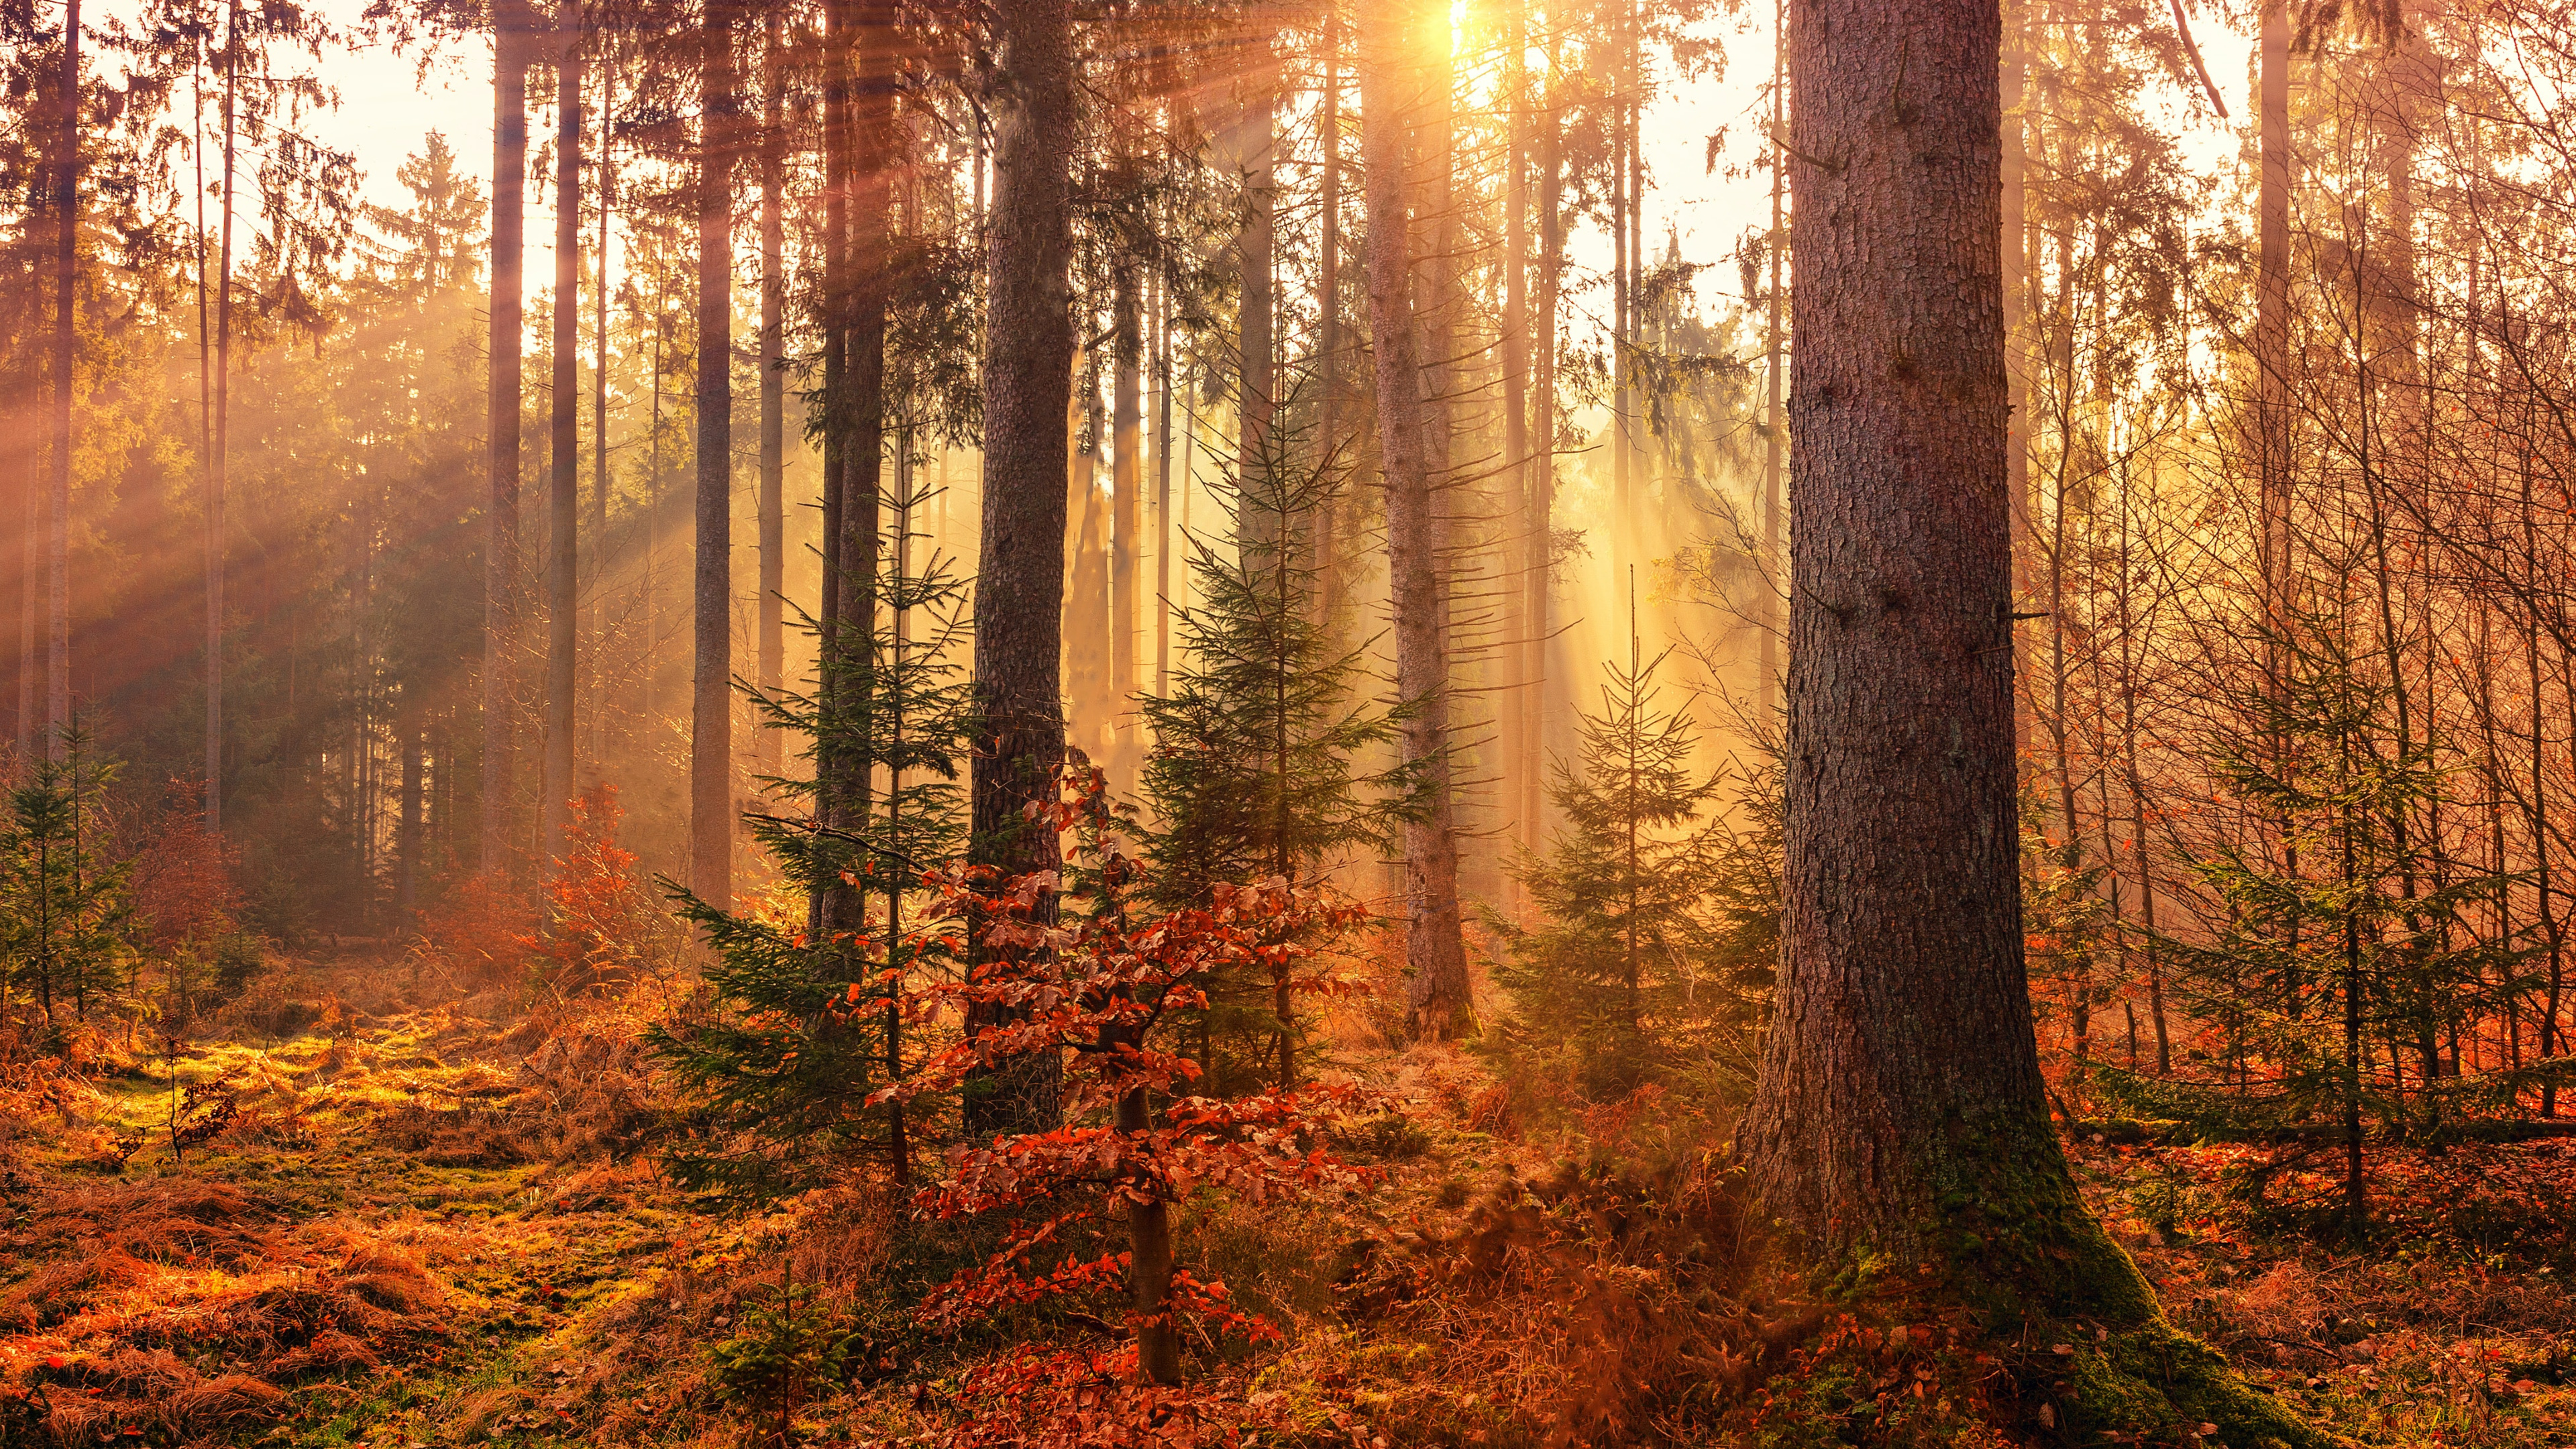 阳光照射过茂密的树林风景壁纸